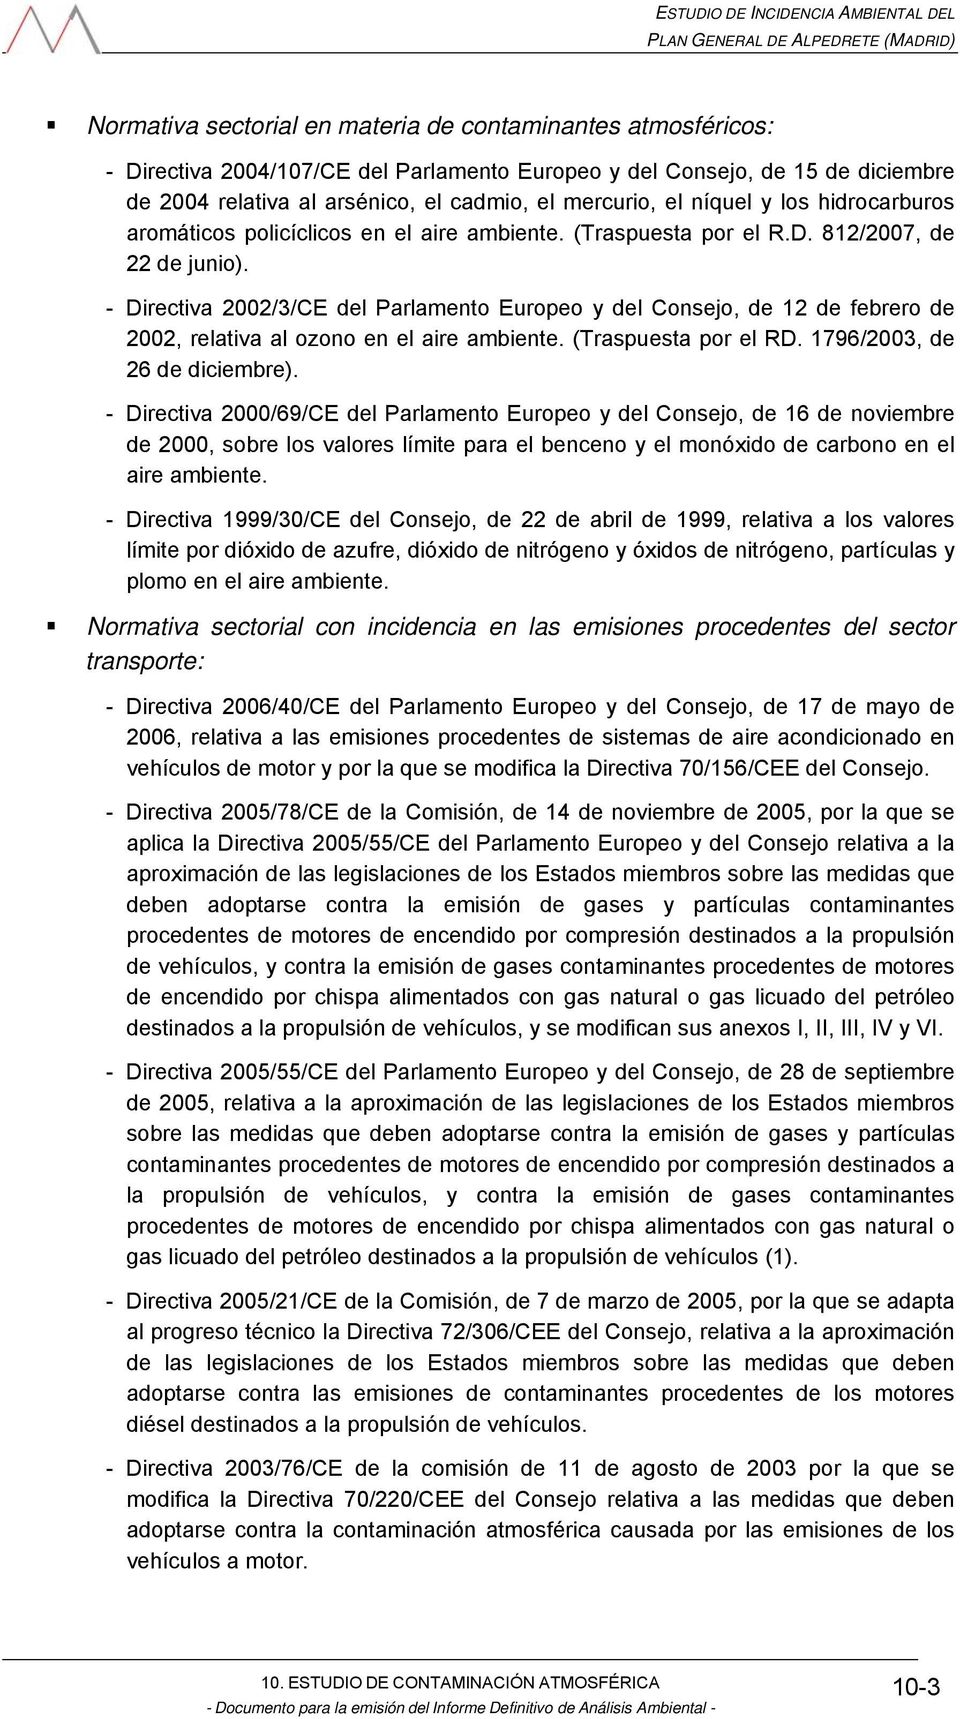 - Directiva 2002/3/CE del Parlamento Europeo y del Consejo, de 12 de febrero de 2002, relativa al ozono en el aire ambiente. (Traspuesta por el RD. 1796/2003, de 26 de diciembre).